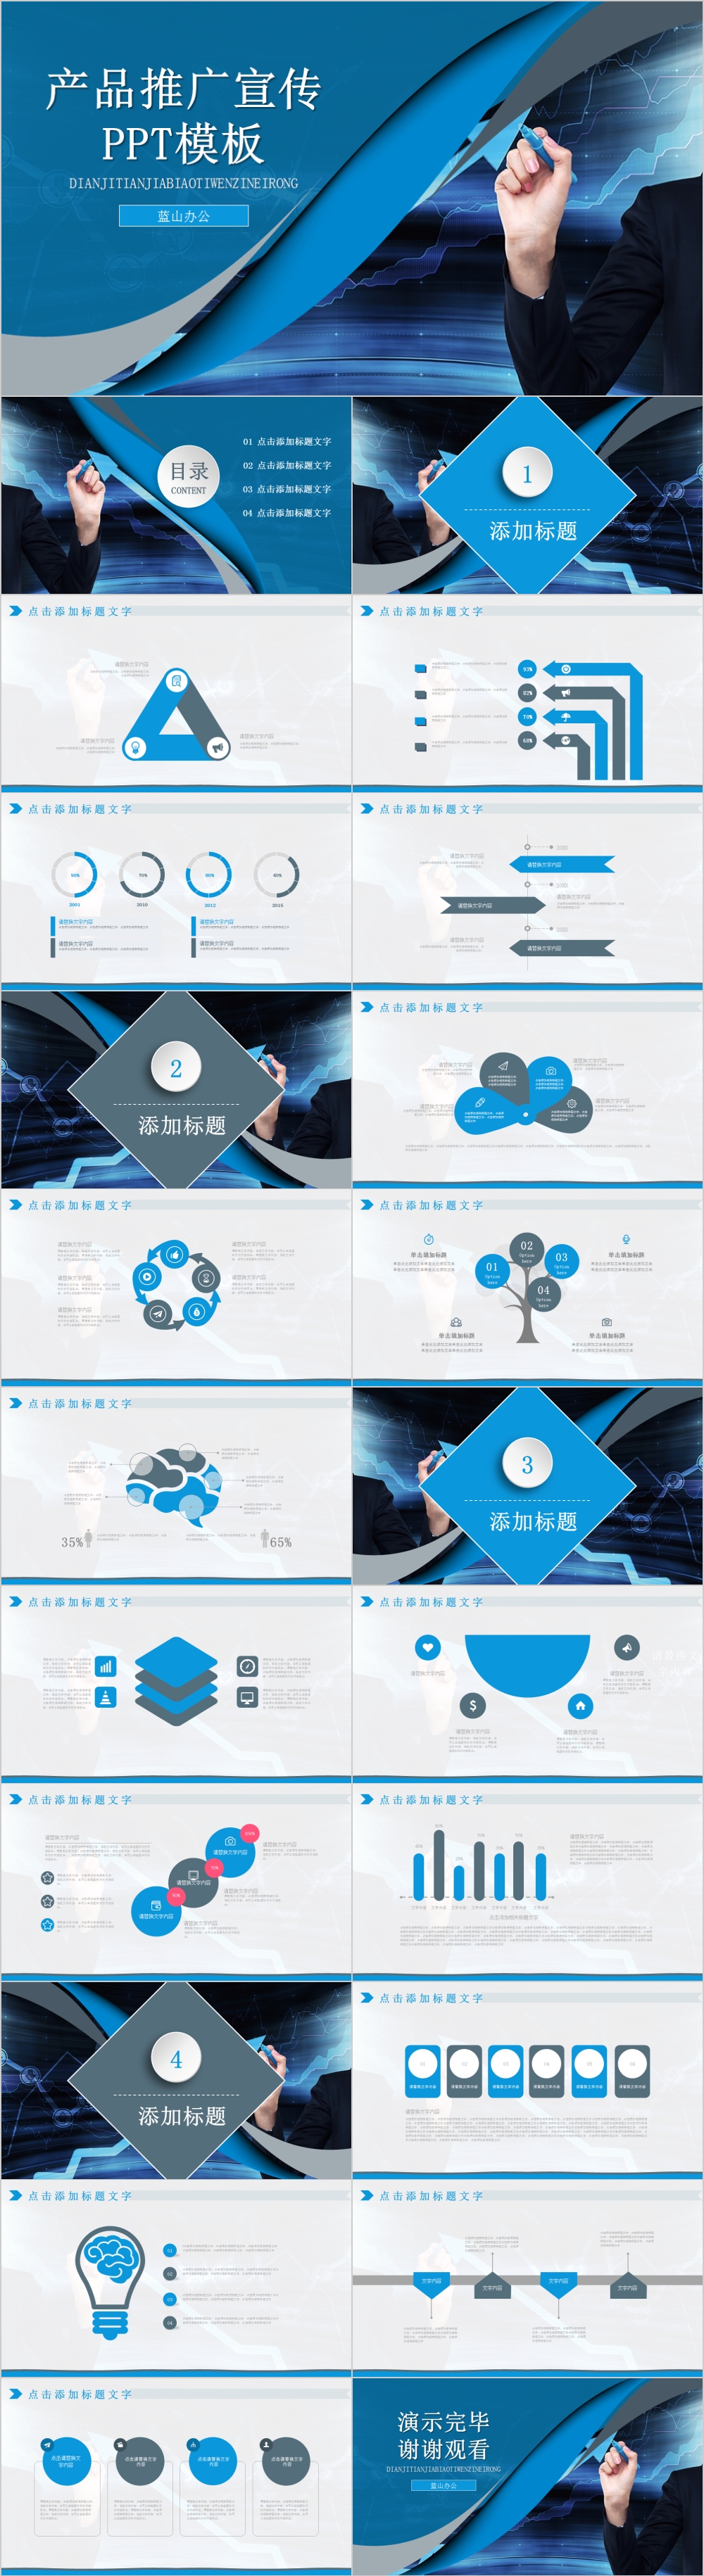 蓝色科技感产品推广宣传PPT模板